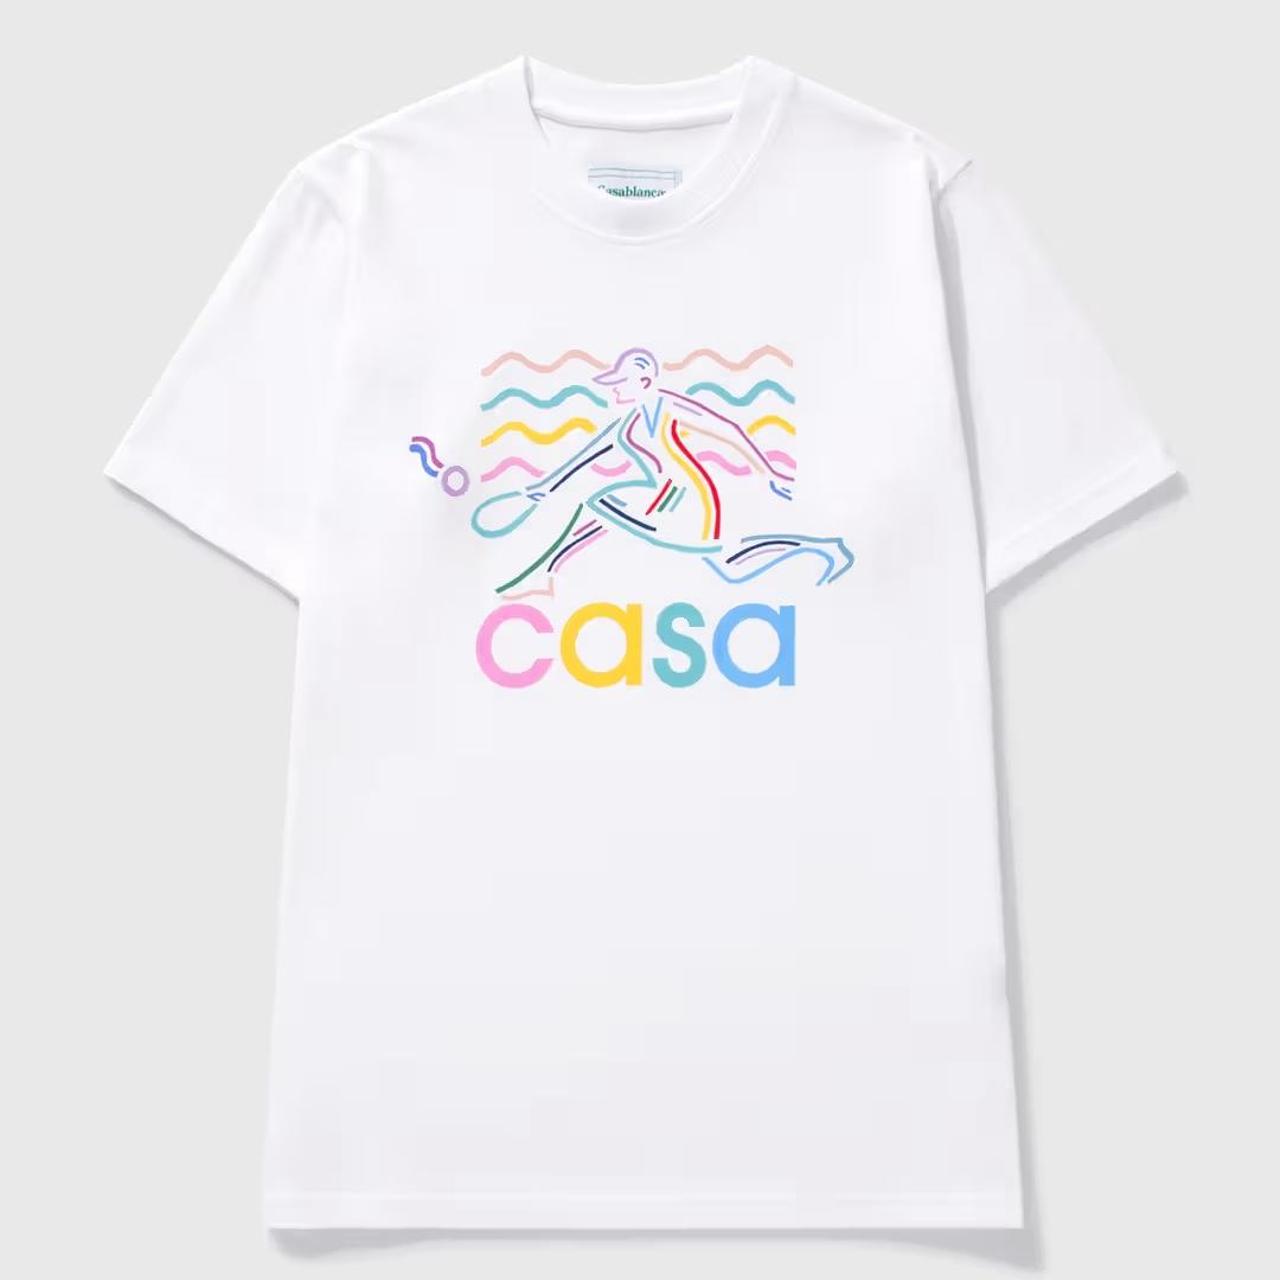 Casablanca Women's T-shirt (2)